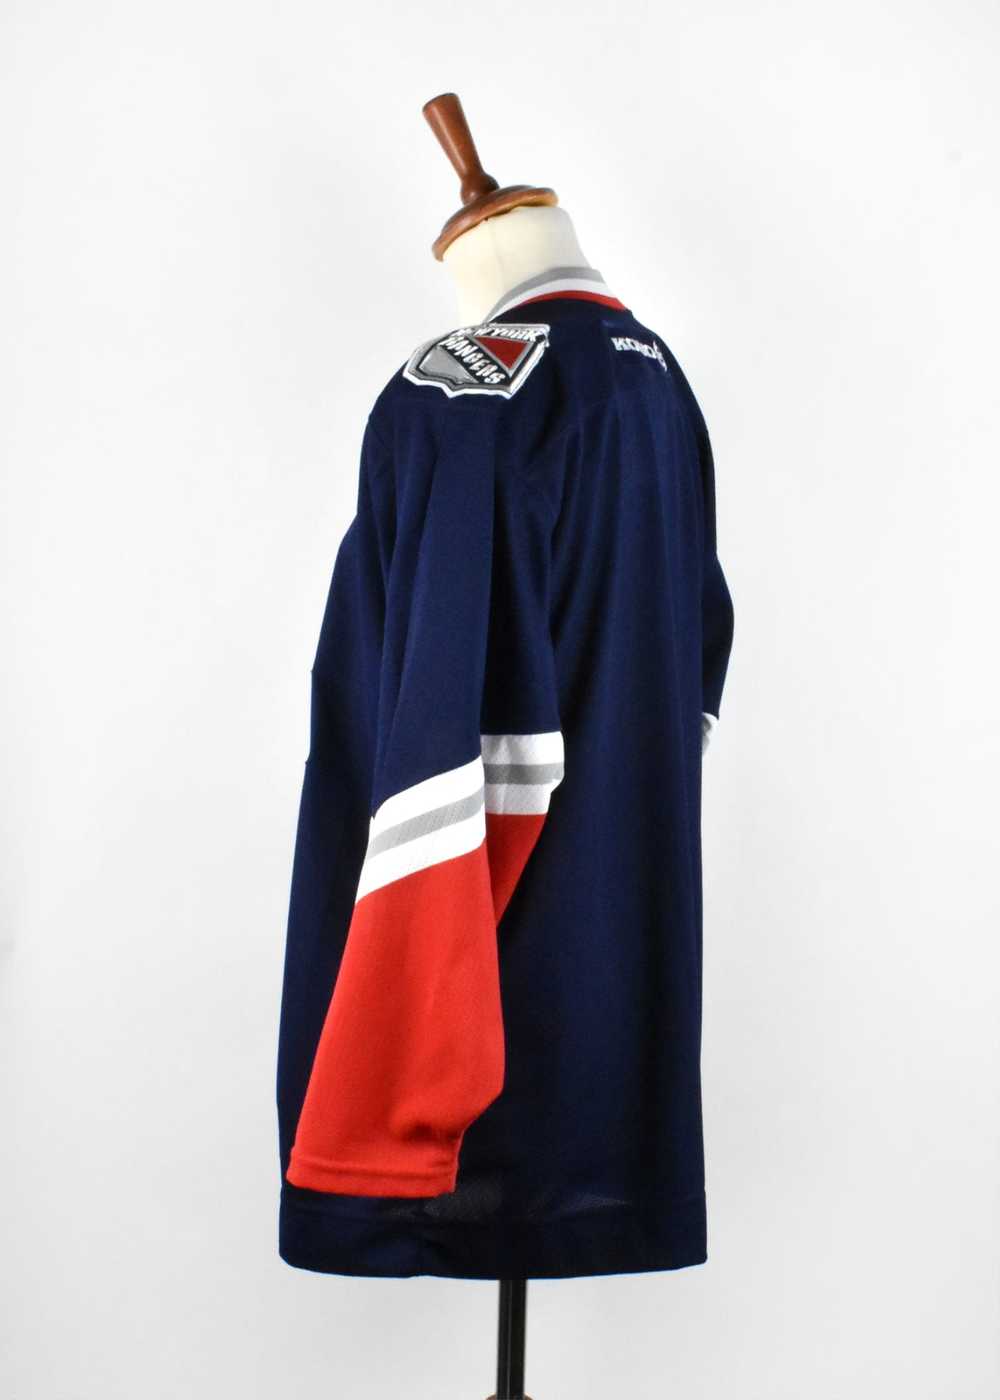 New York Rangers Koho Hockey Jersey, Made in Cana… - image 5